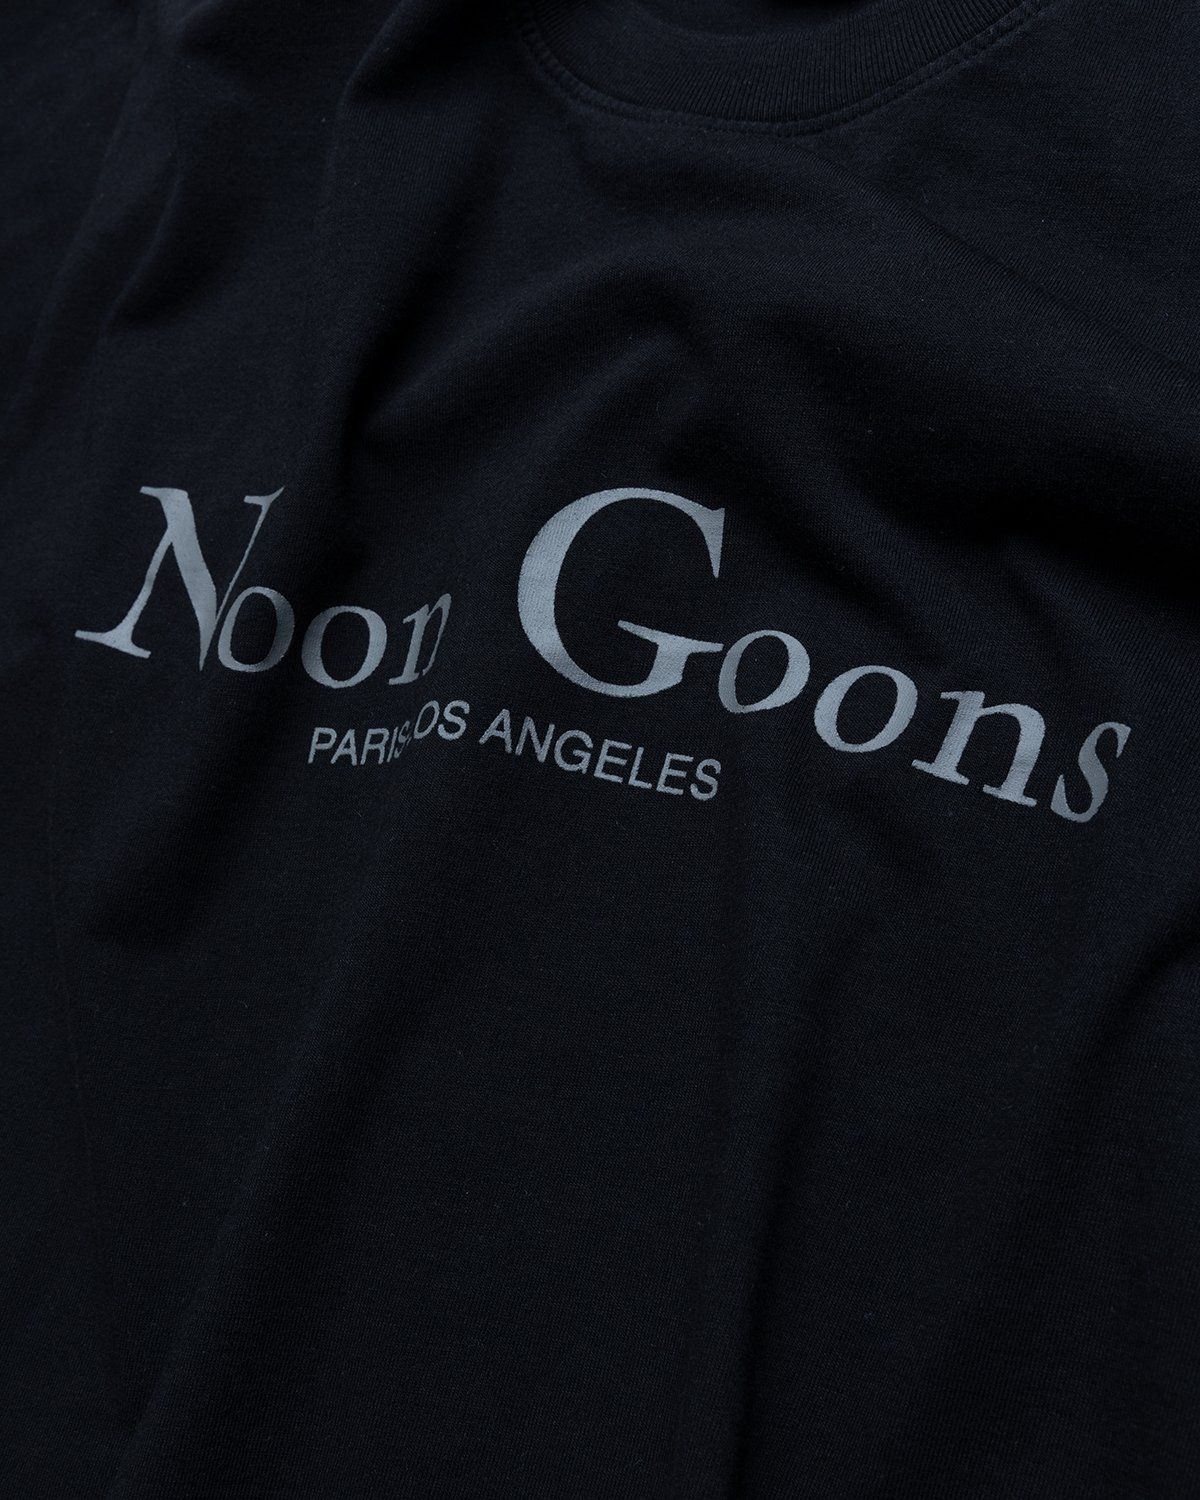 Noon Goons – Sister City T-Shirt Black - T-Shirts - Black - Image 4